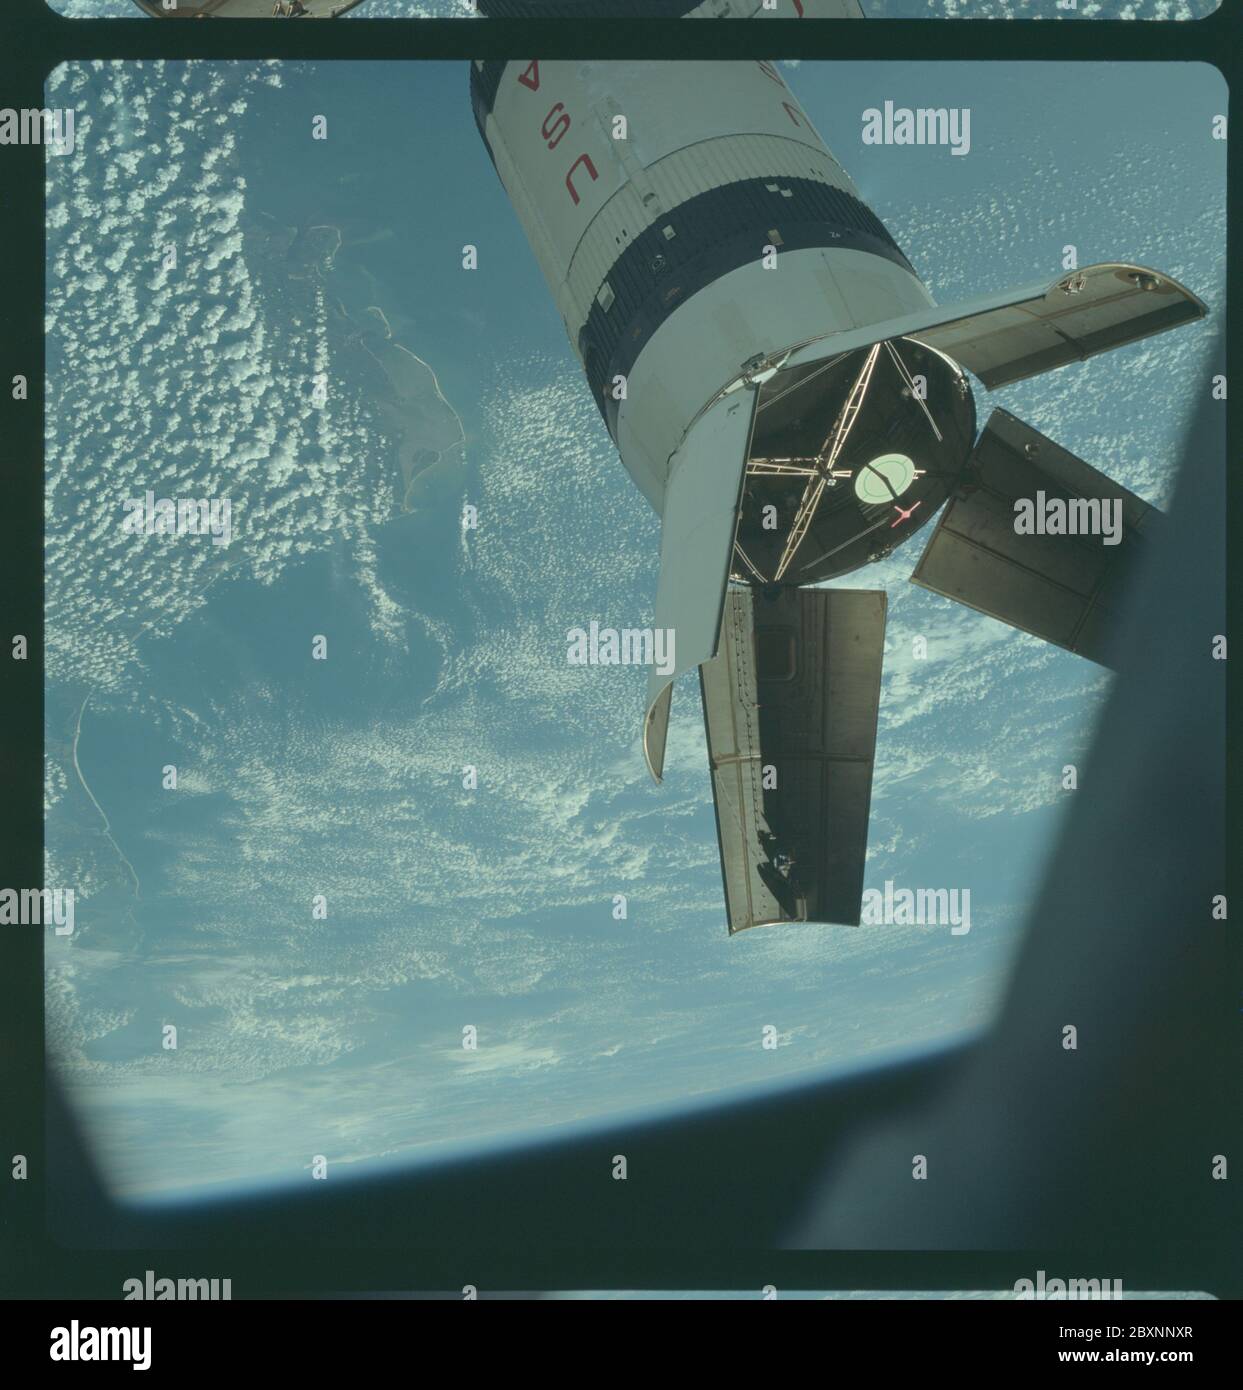 AS07-03-1543 - Apollo 7 - Apollo 7 Mission, Saturn IVB Booster während der Andockmanöver; Umfang und Inhalt: Die Originaldatenbank beschreibt dies als: Beschreibung: Apollo 7, die aufgewendete Saturn IVB-Etappe, die von der Apollo 7 Raumsonde während der Transposition und Andockmanöver fotografiert wurde. Dieses Foto wurde während der zweiten Revolution der Erde durch Apollo 7 in Pensacola und Panama City, Florida, aufgenommen. Die runde, weiße Scheibe innerhalb der offenen Panels des Saturn IVB ist ein simuliertes Andockziel, ähnlich dem, das auf dem Mondmodul für das Andocken während Mondmissionen verwendet wird. Hoch schräg. Wolken Stockfoto